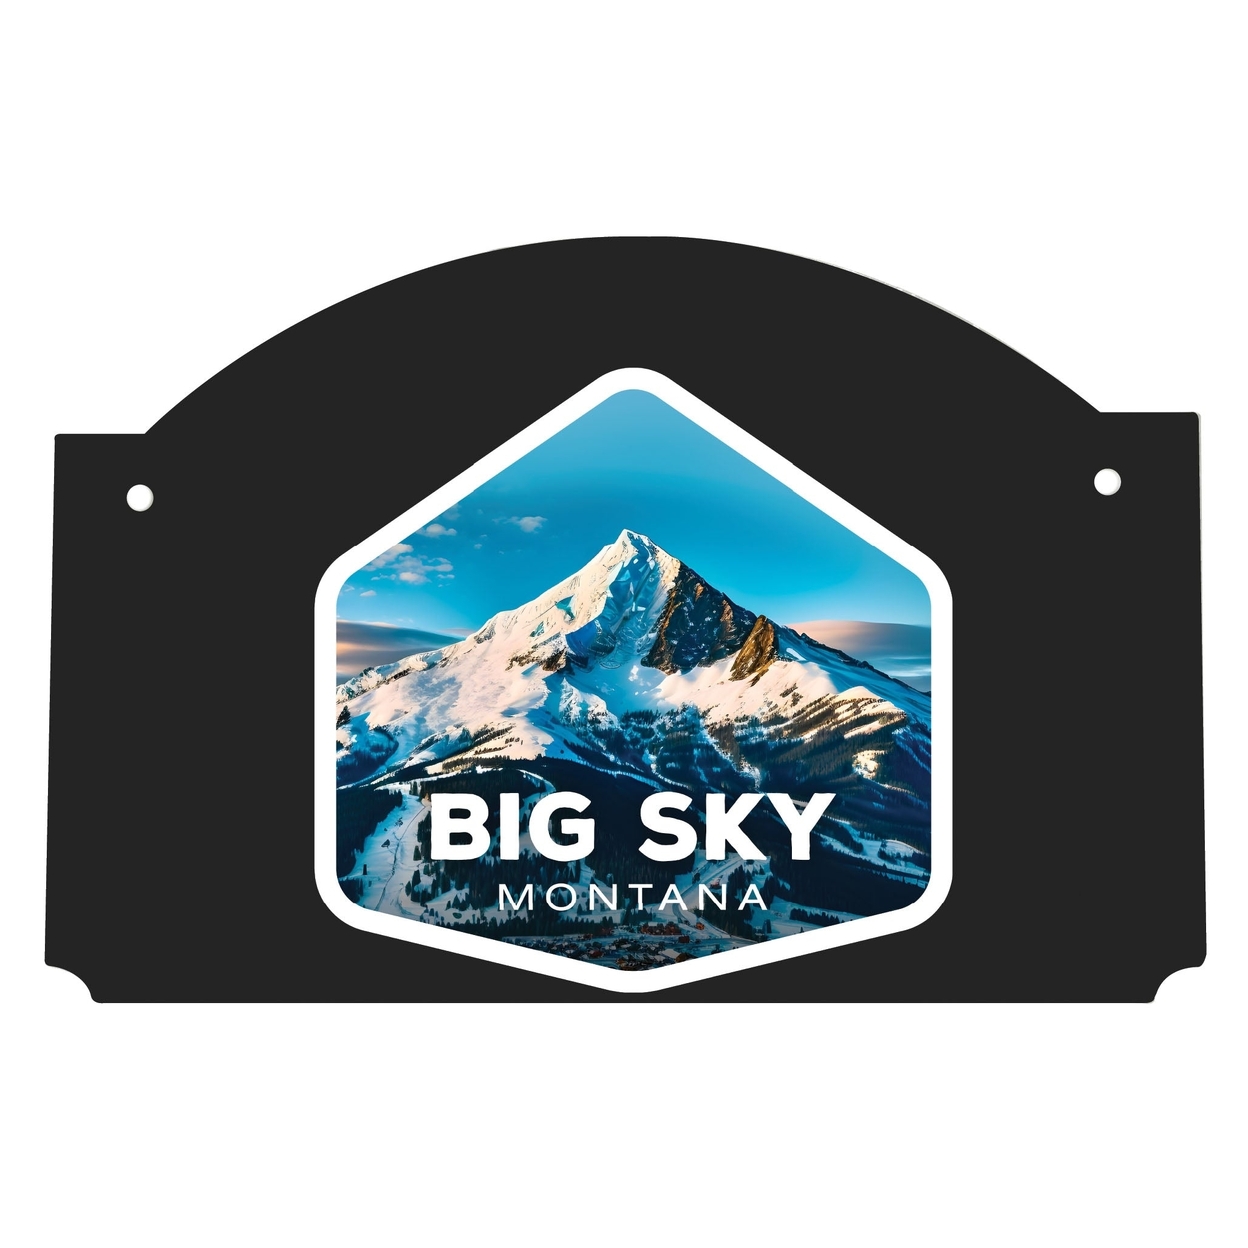 Big Sky Montana Mountain Design Souvenir Wood Sign Flat With String